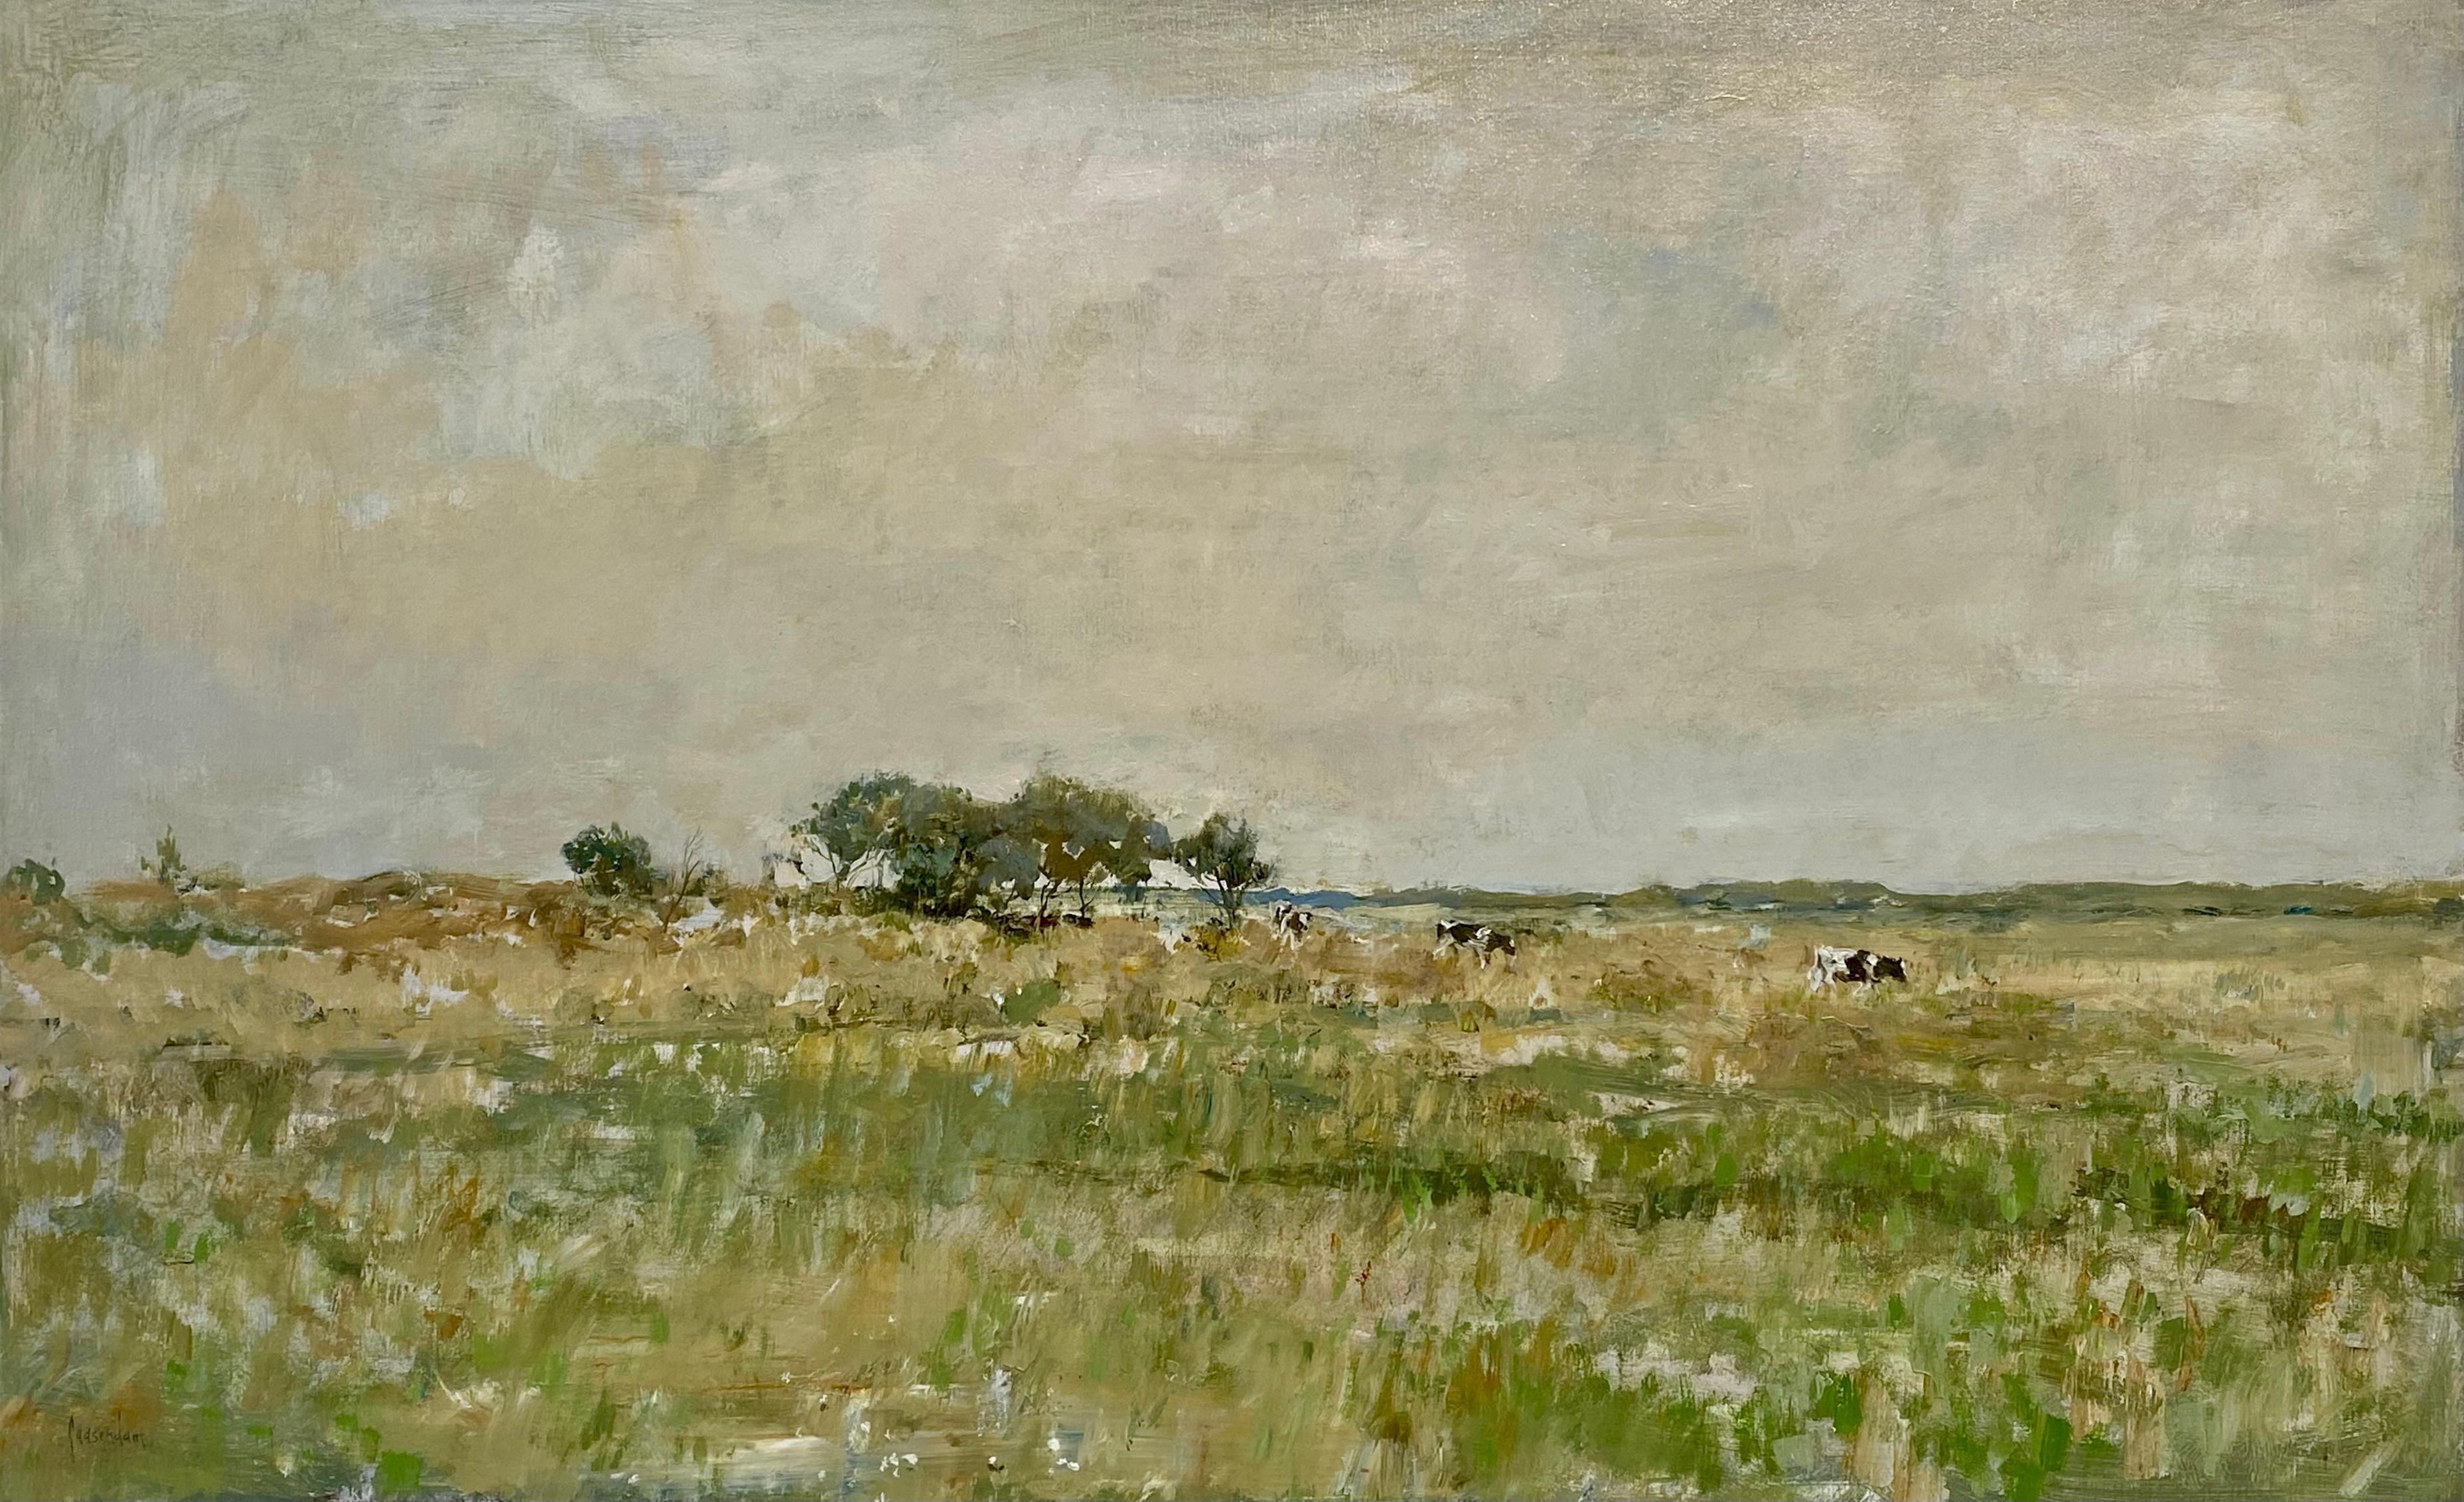 Dutch Cows on the Salt Marsh- 21st Century Contemporary Dutch Landscape Painting